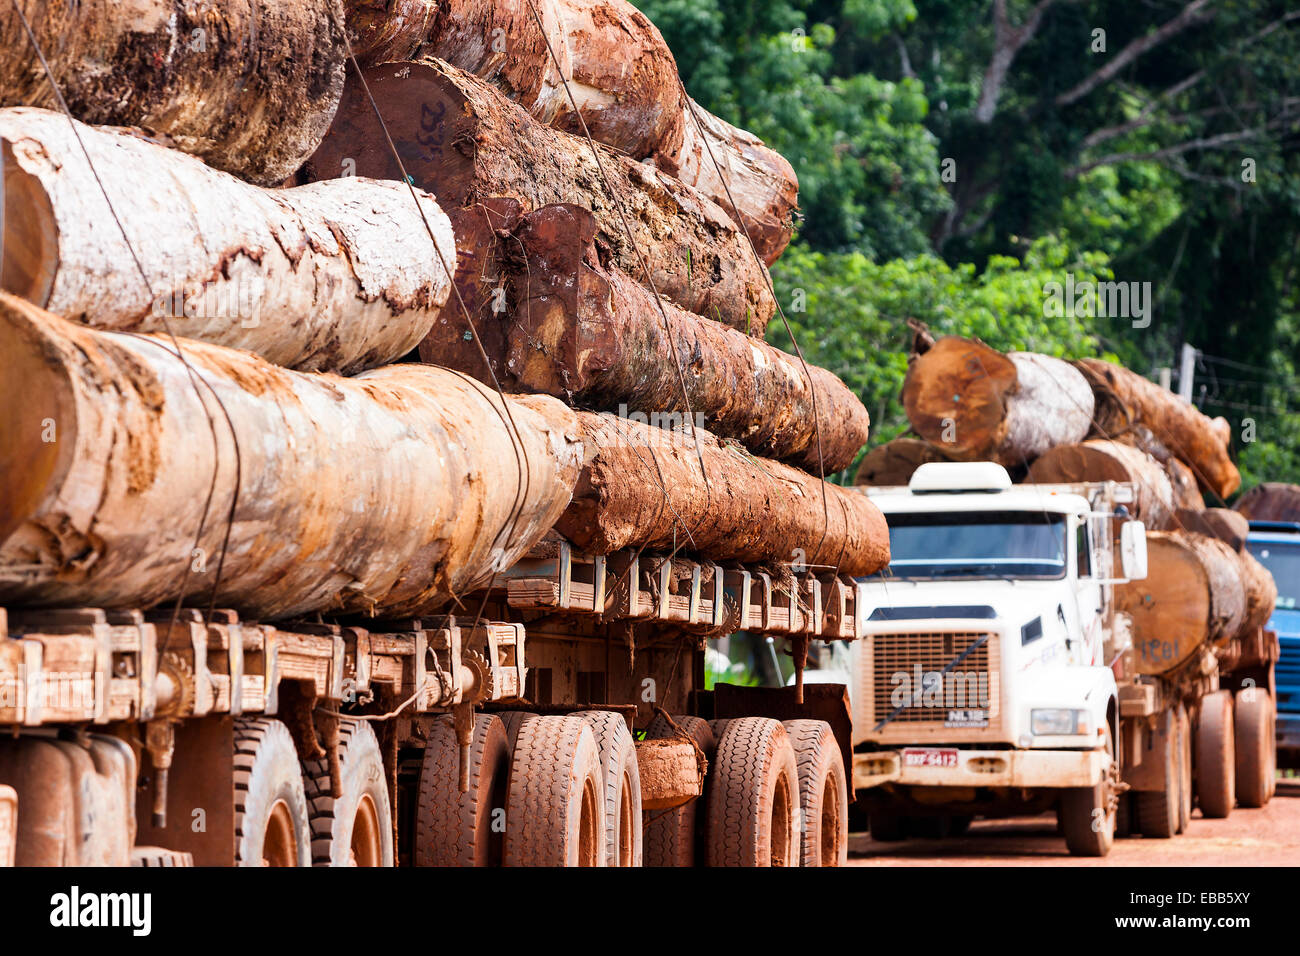 Brésil Amazon Rainforest grumier transporte du bois Banque D'Images